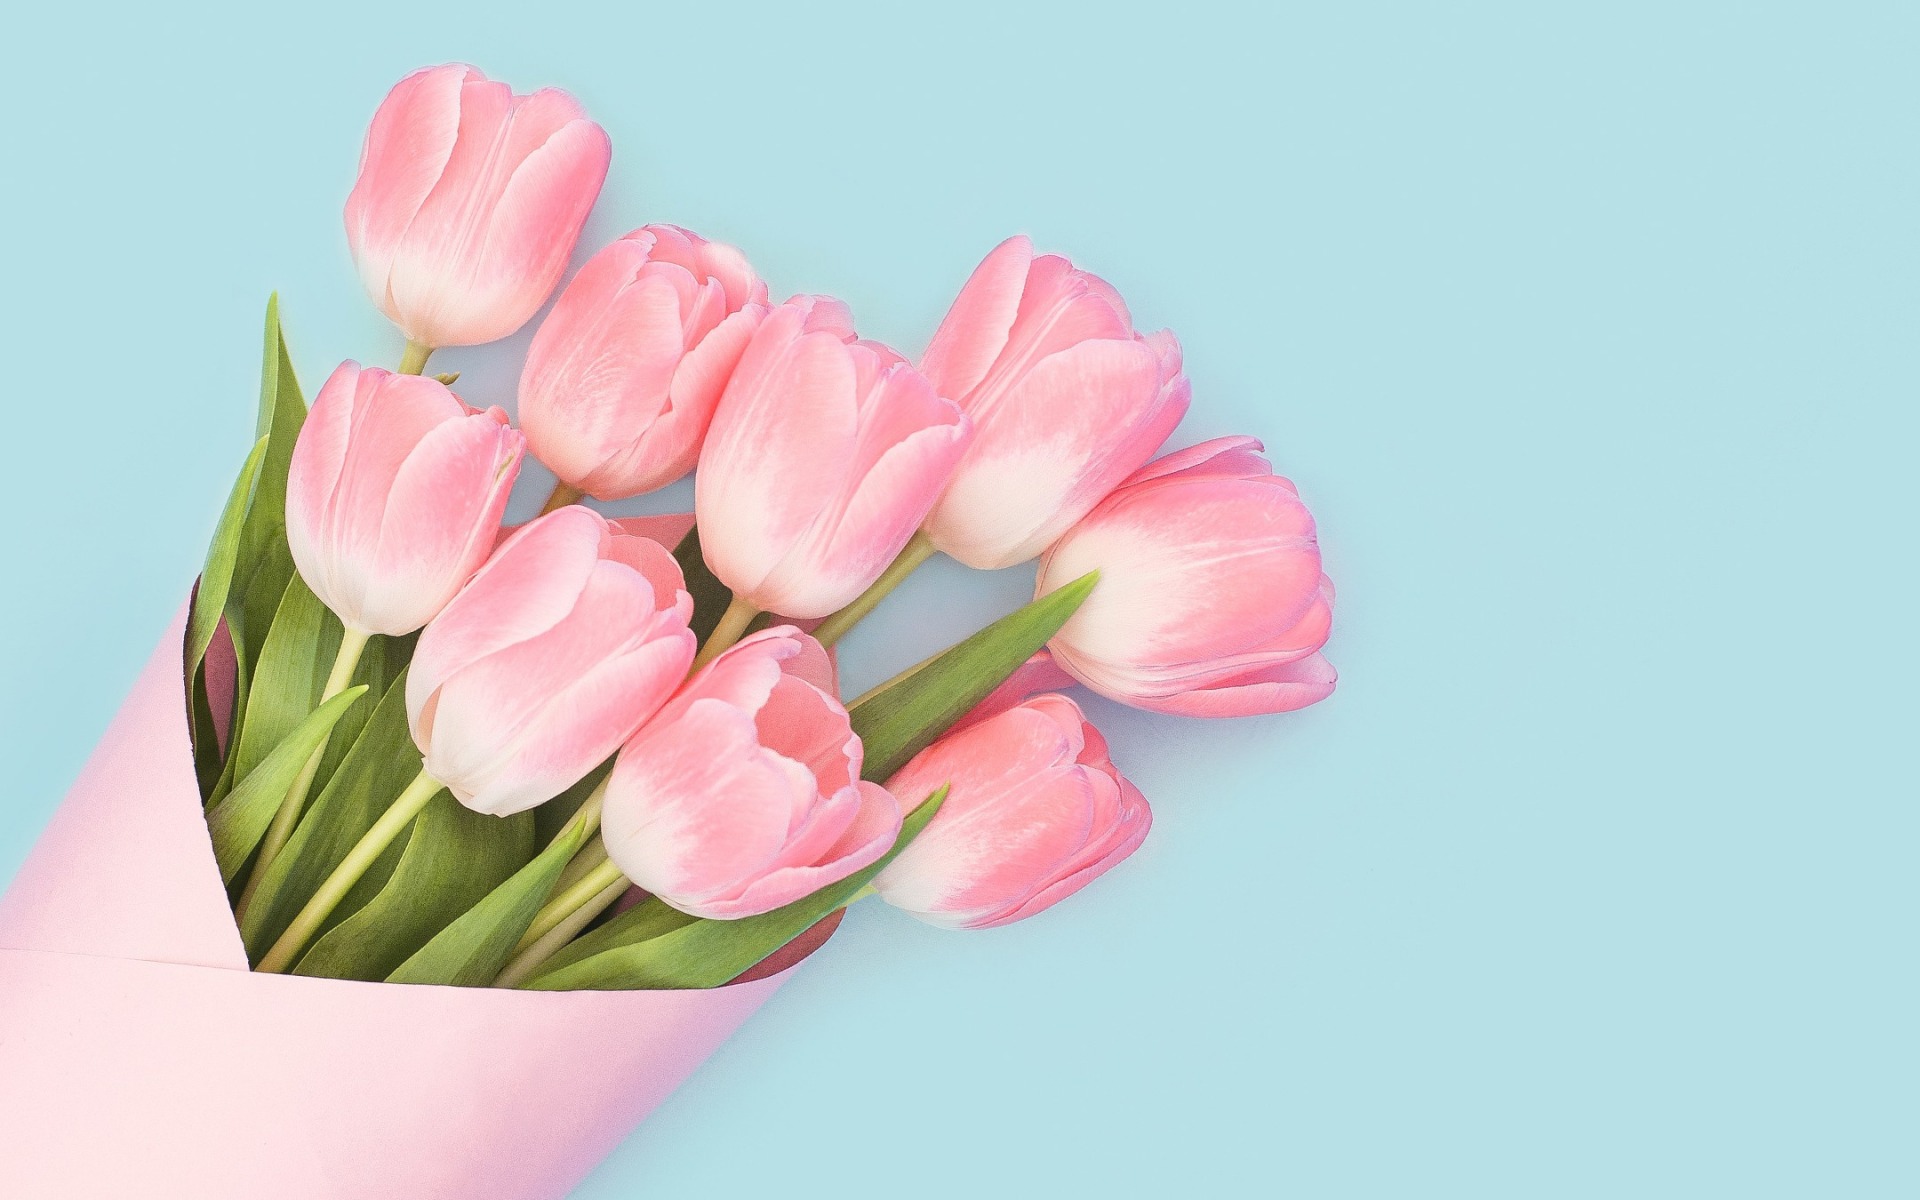 Descargar las imágenes de Tulipanes gratis para teléfonos Android y iPhone fondos  de pantalla de Tulipanes para teléfonos móviles